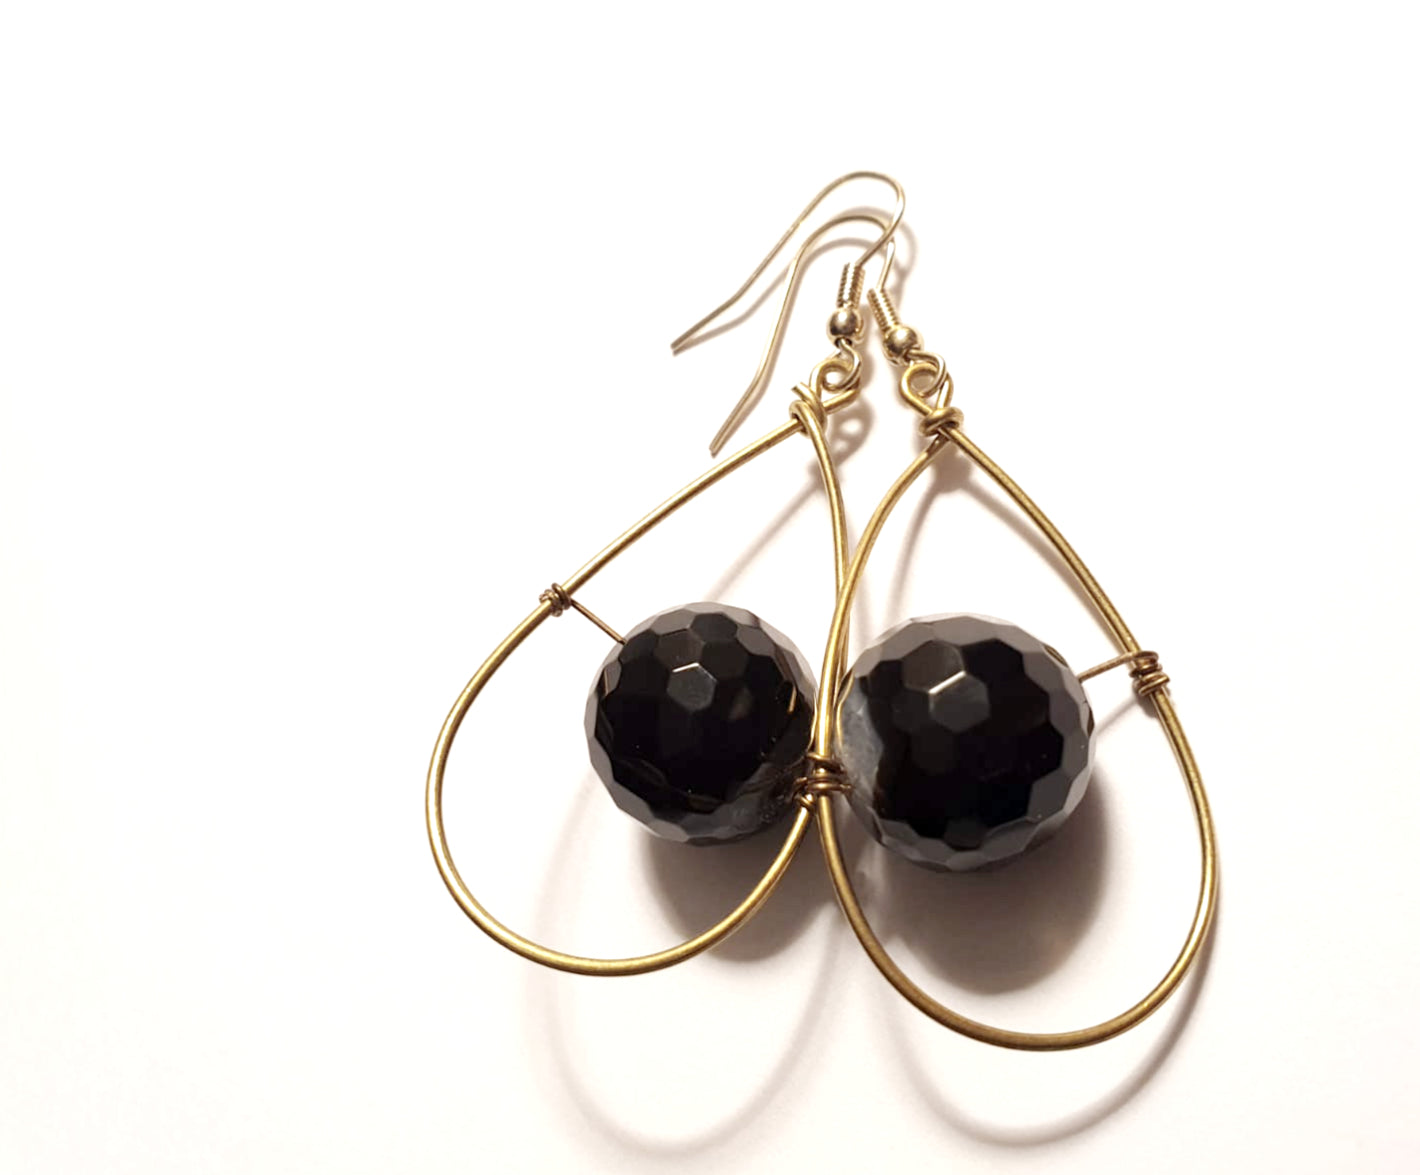 Hanging Black Agate Earrings